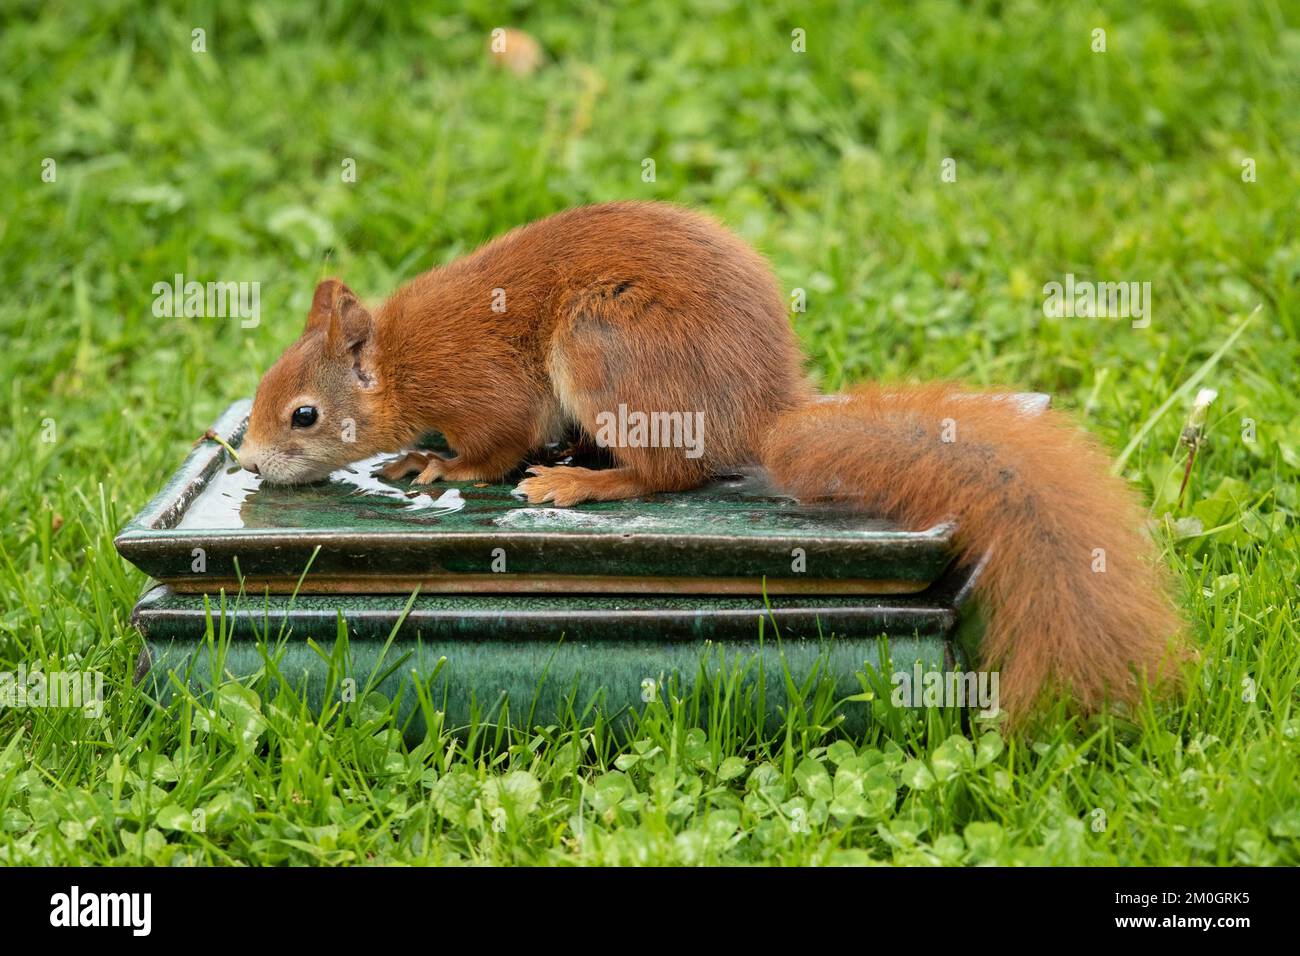 Das Eichhörnchen sitzt auf dem Tisch mit Wasser im grünen Gras und trinkt links und sieht aus Stockfoto